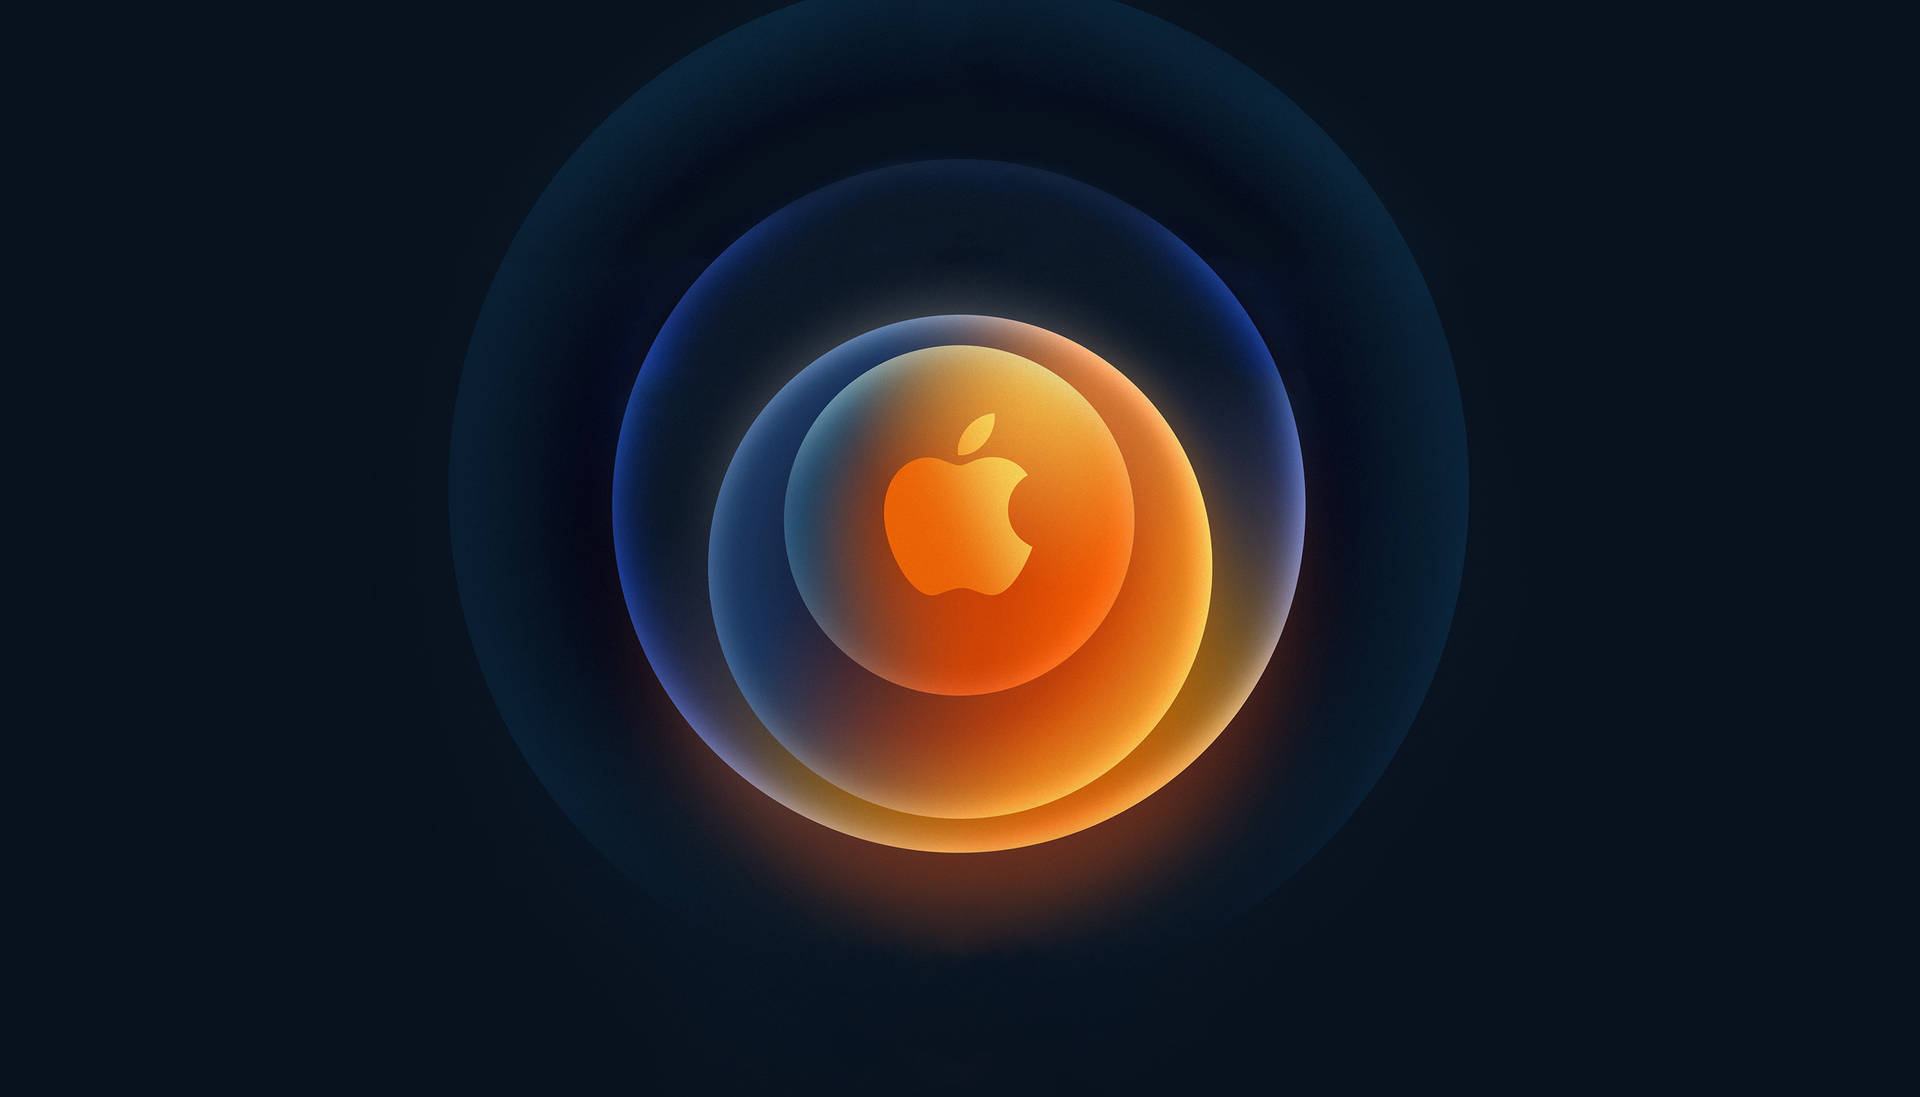 Full Hd Apple Circular Design Wallpaper